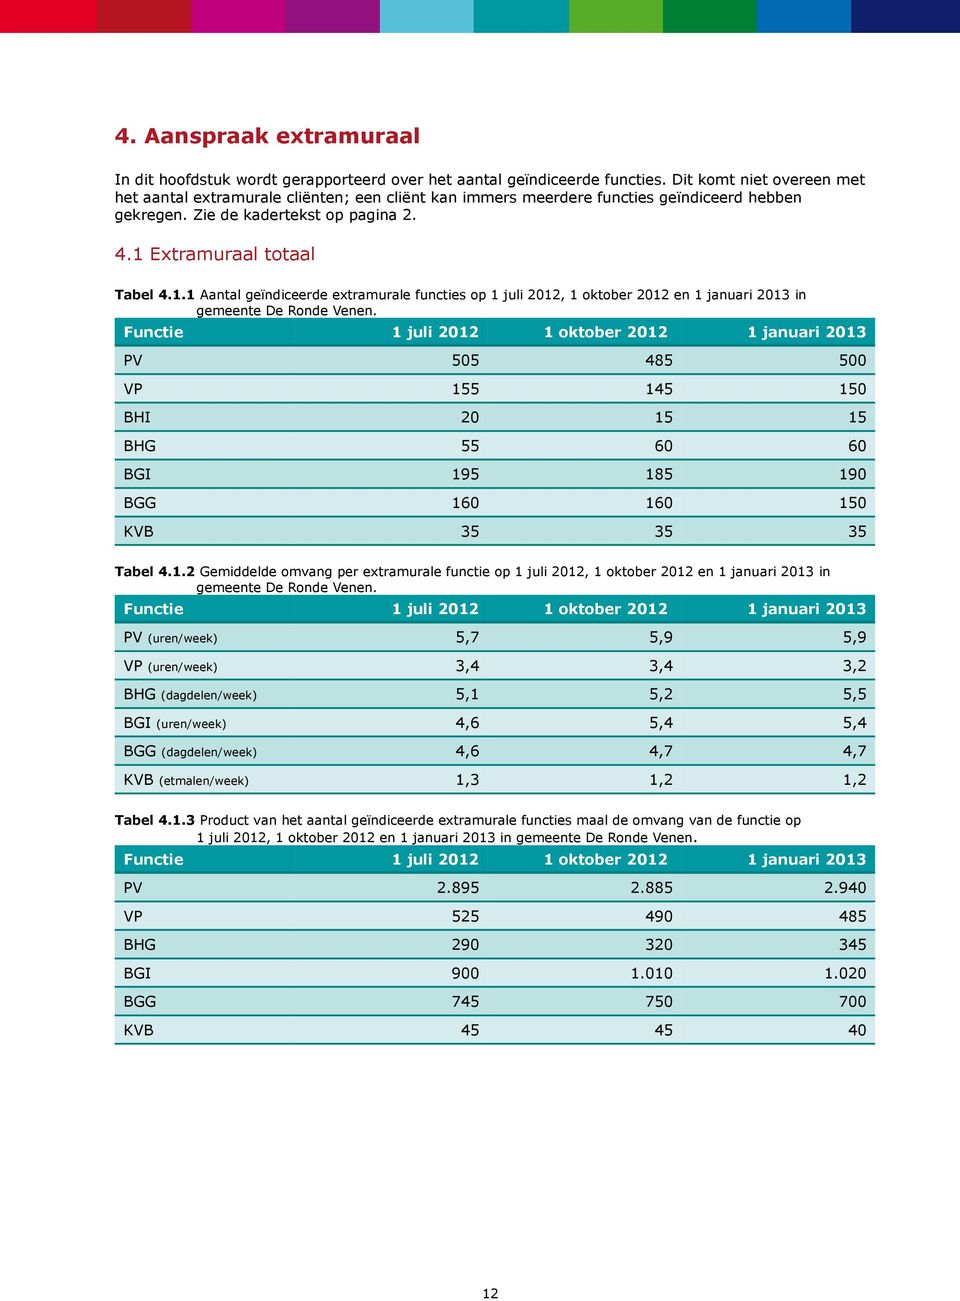 Extramuraal totaal Tabel 4.1.1 Aantal geïndiceerde extramurale functies op 1 juli 2012, 1 oktober 2012 en 1 januari 2013 in gemeente De Ronde Venen.